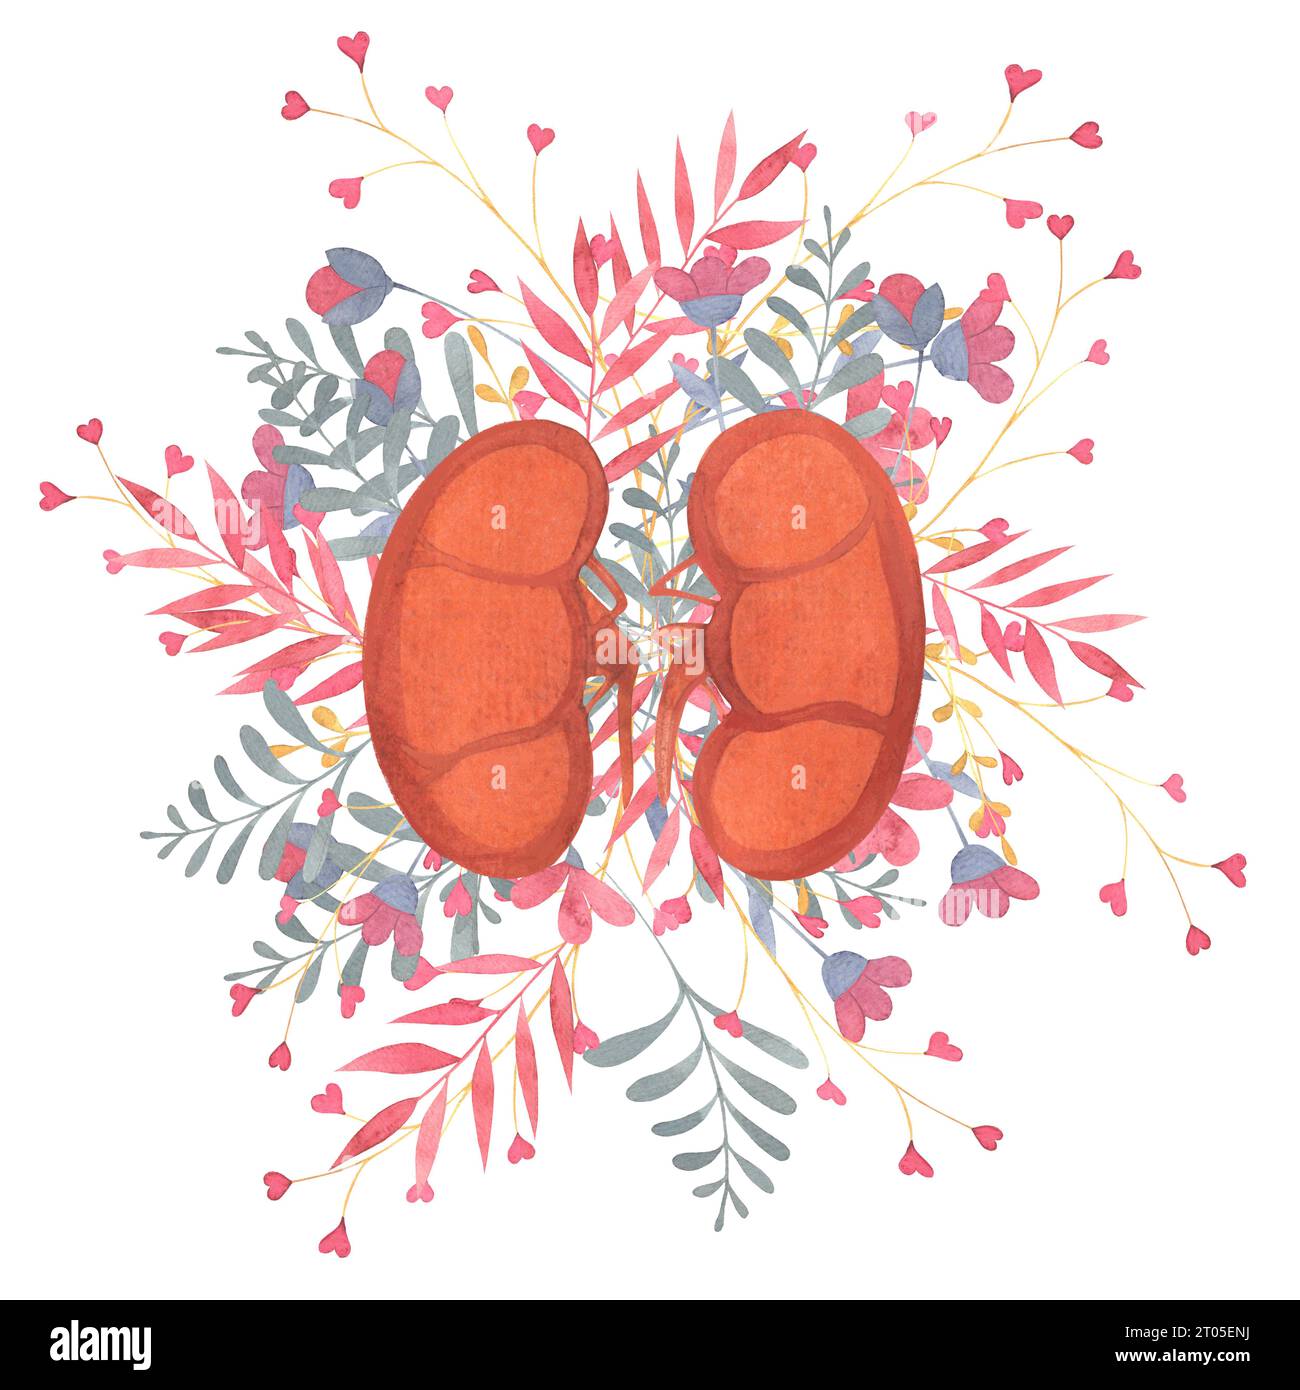 reins humains, organes internes humains, fleurs, brindilles, illustration à l'aquarelle pour le thème de cardiologie Banque D'Images